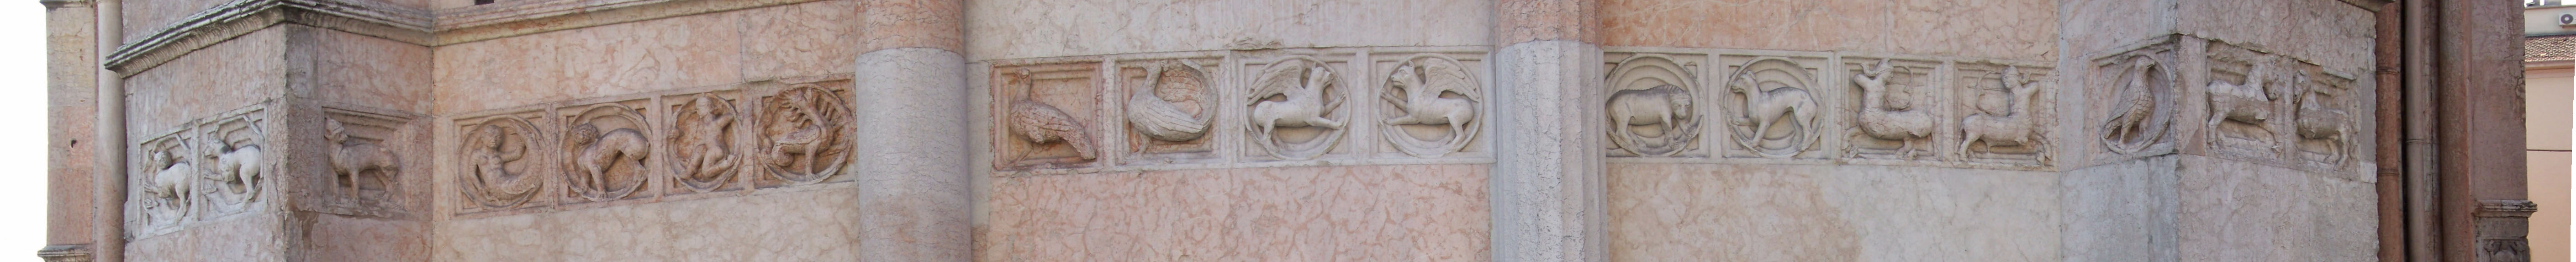 Le formelle del lato sud-ovest (dalla lepre al cavallo)
